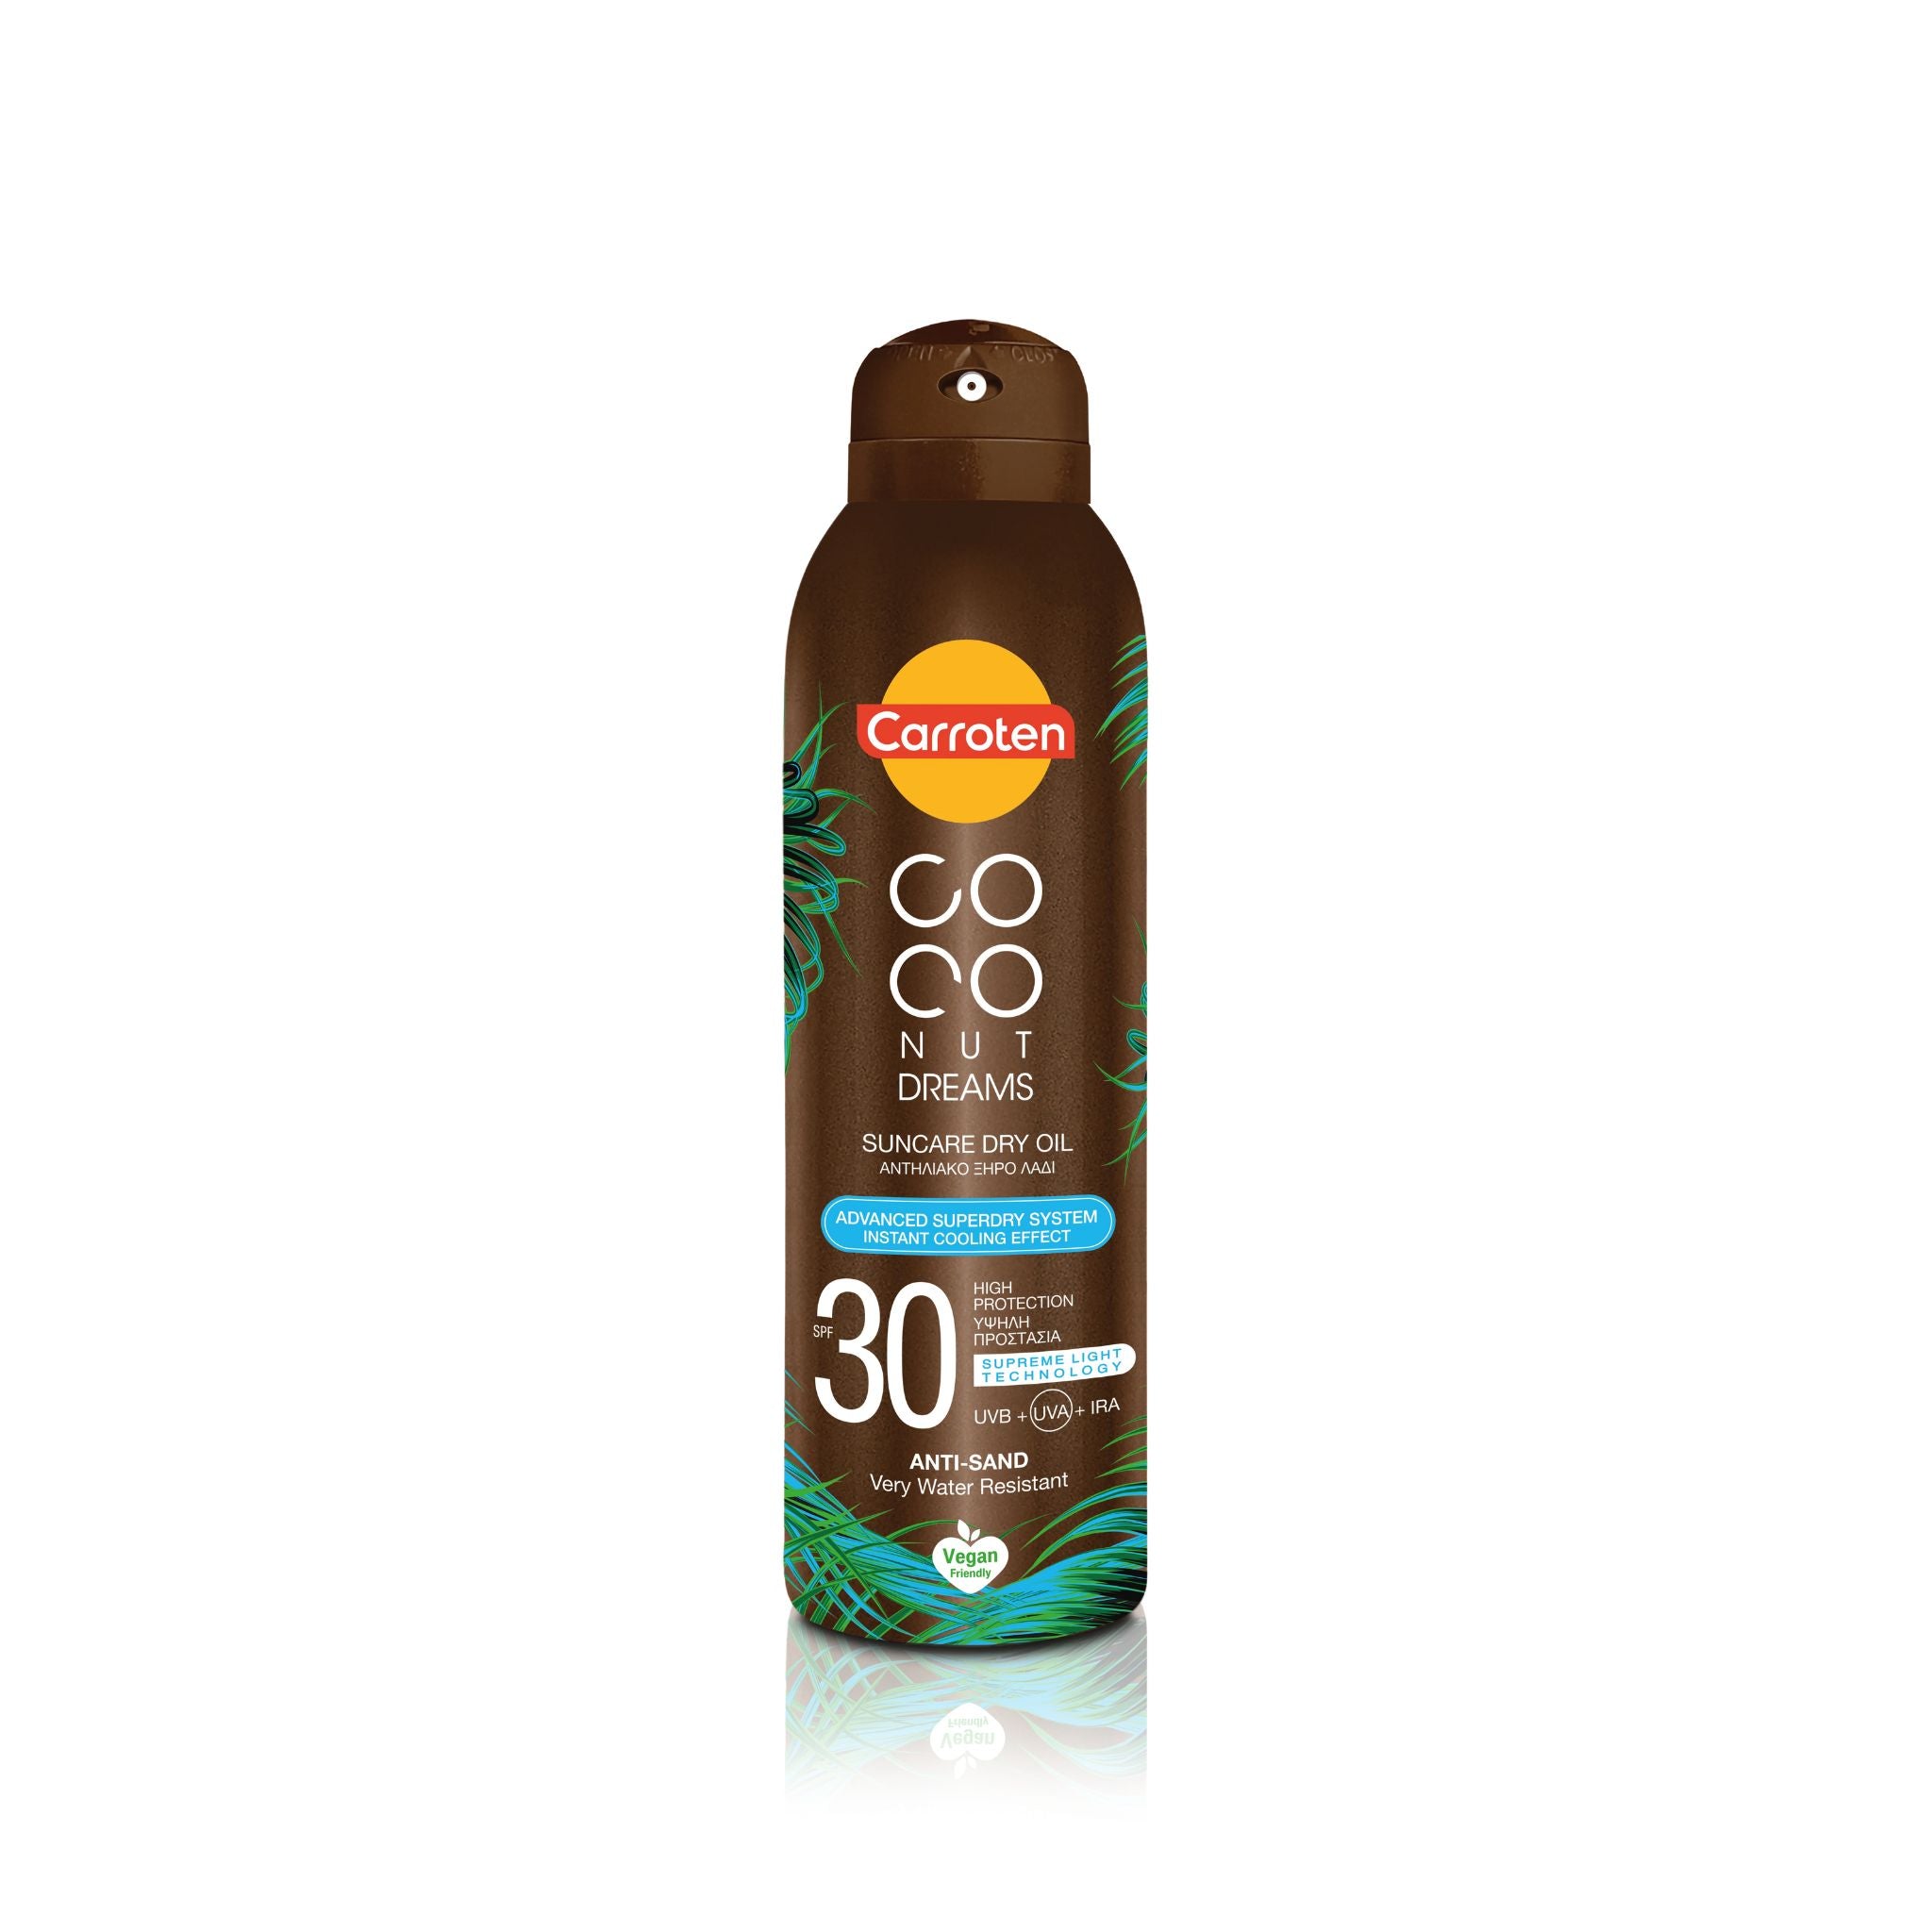 Coconut dreams suncare dry oil 30